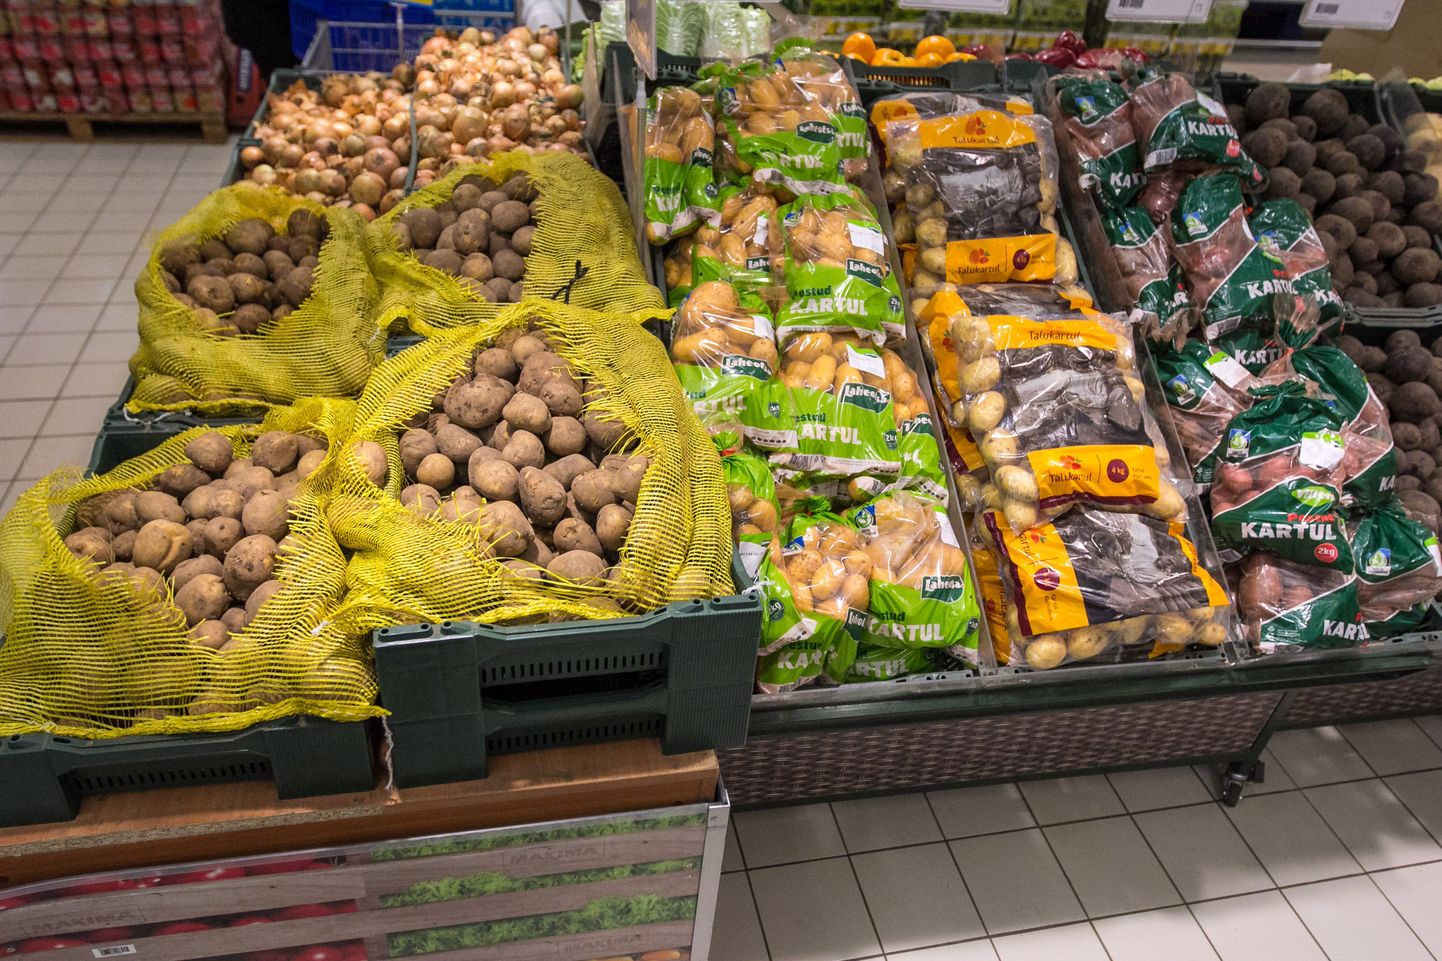 Eesti suuremad kaupluseketid pakuvad tarbijatele peamiselt siiski kodumaist toodangut. Valga Maximas oli kartulivalik esmaspäeva pärastlõunal lai ja täiesti eestimaine – kartuleid oli saadaval erinevas hinnaklassis, nii lahtiselt kui pakitult.